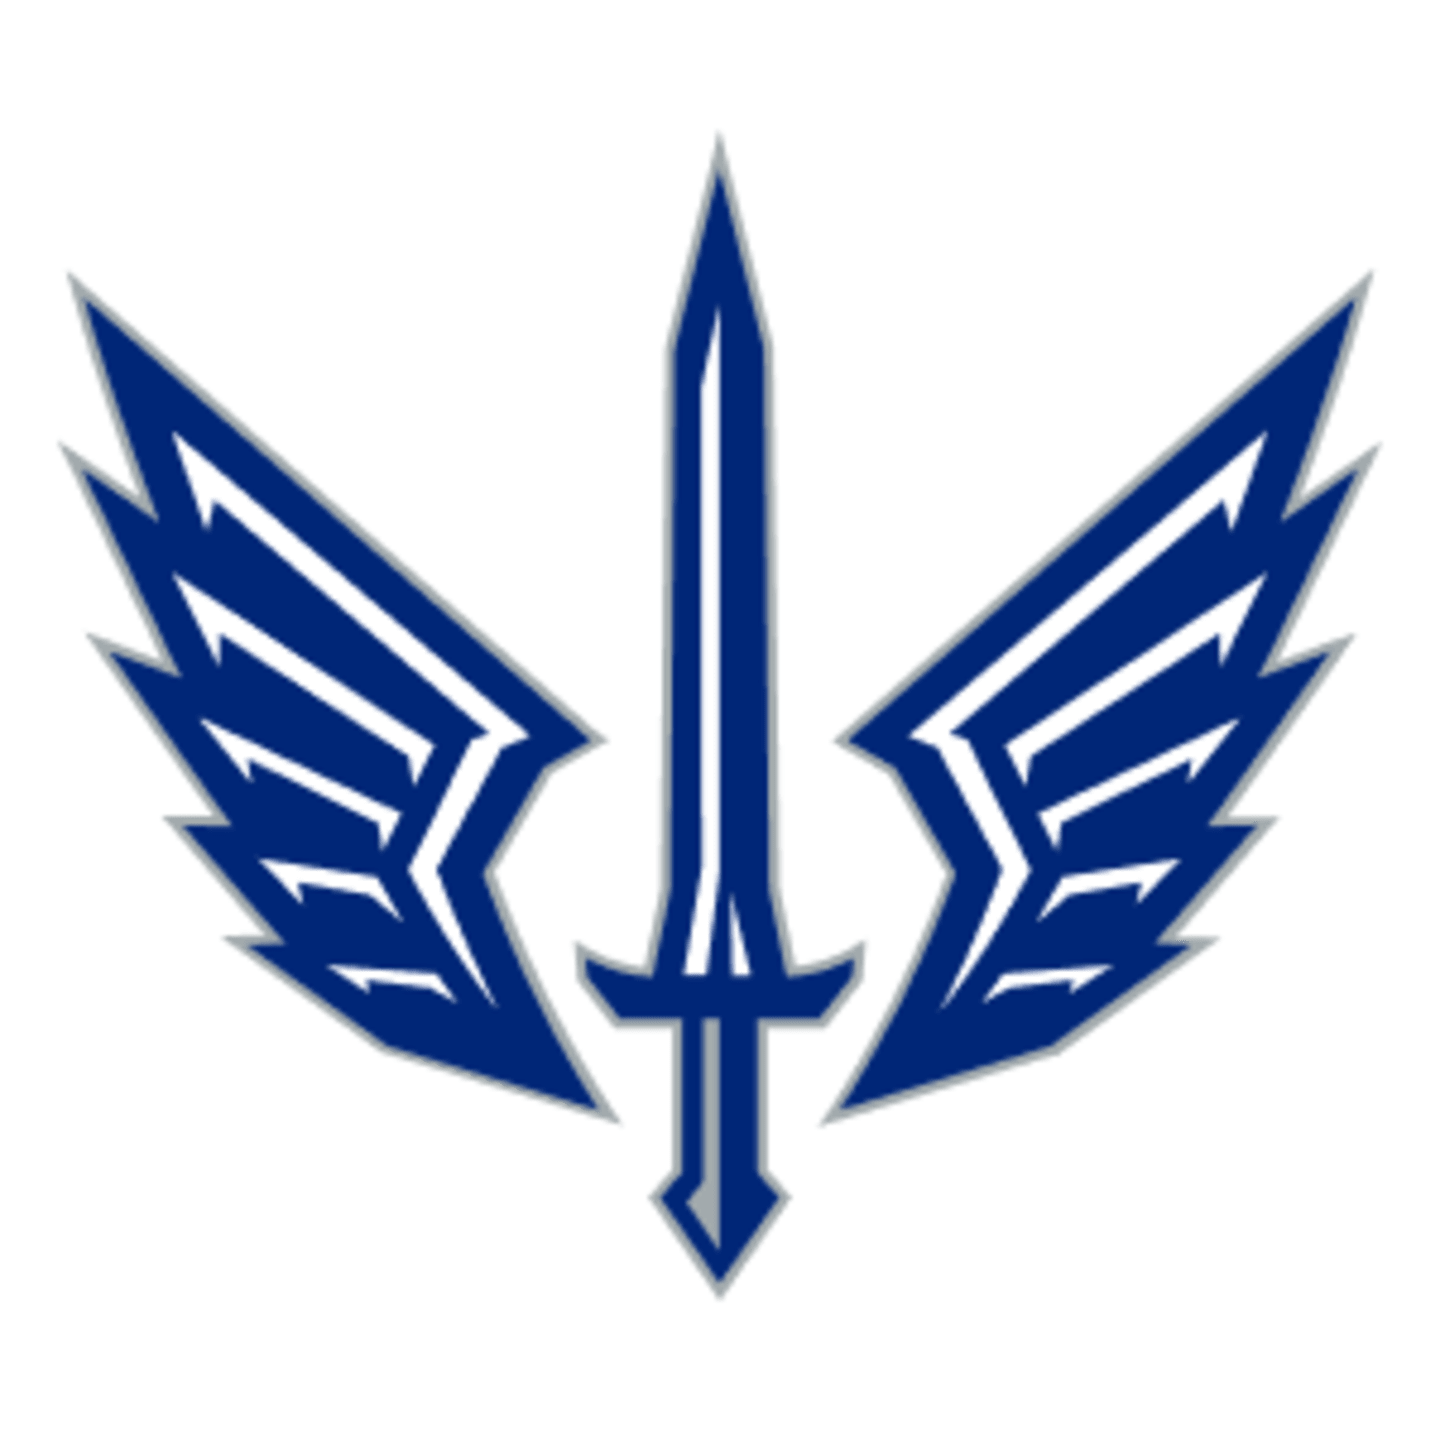 St. Louis Cardinals Blues City SC Battlehawks 4 sports logo team